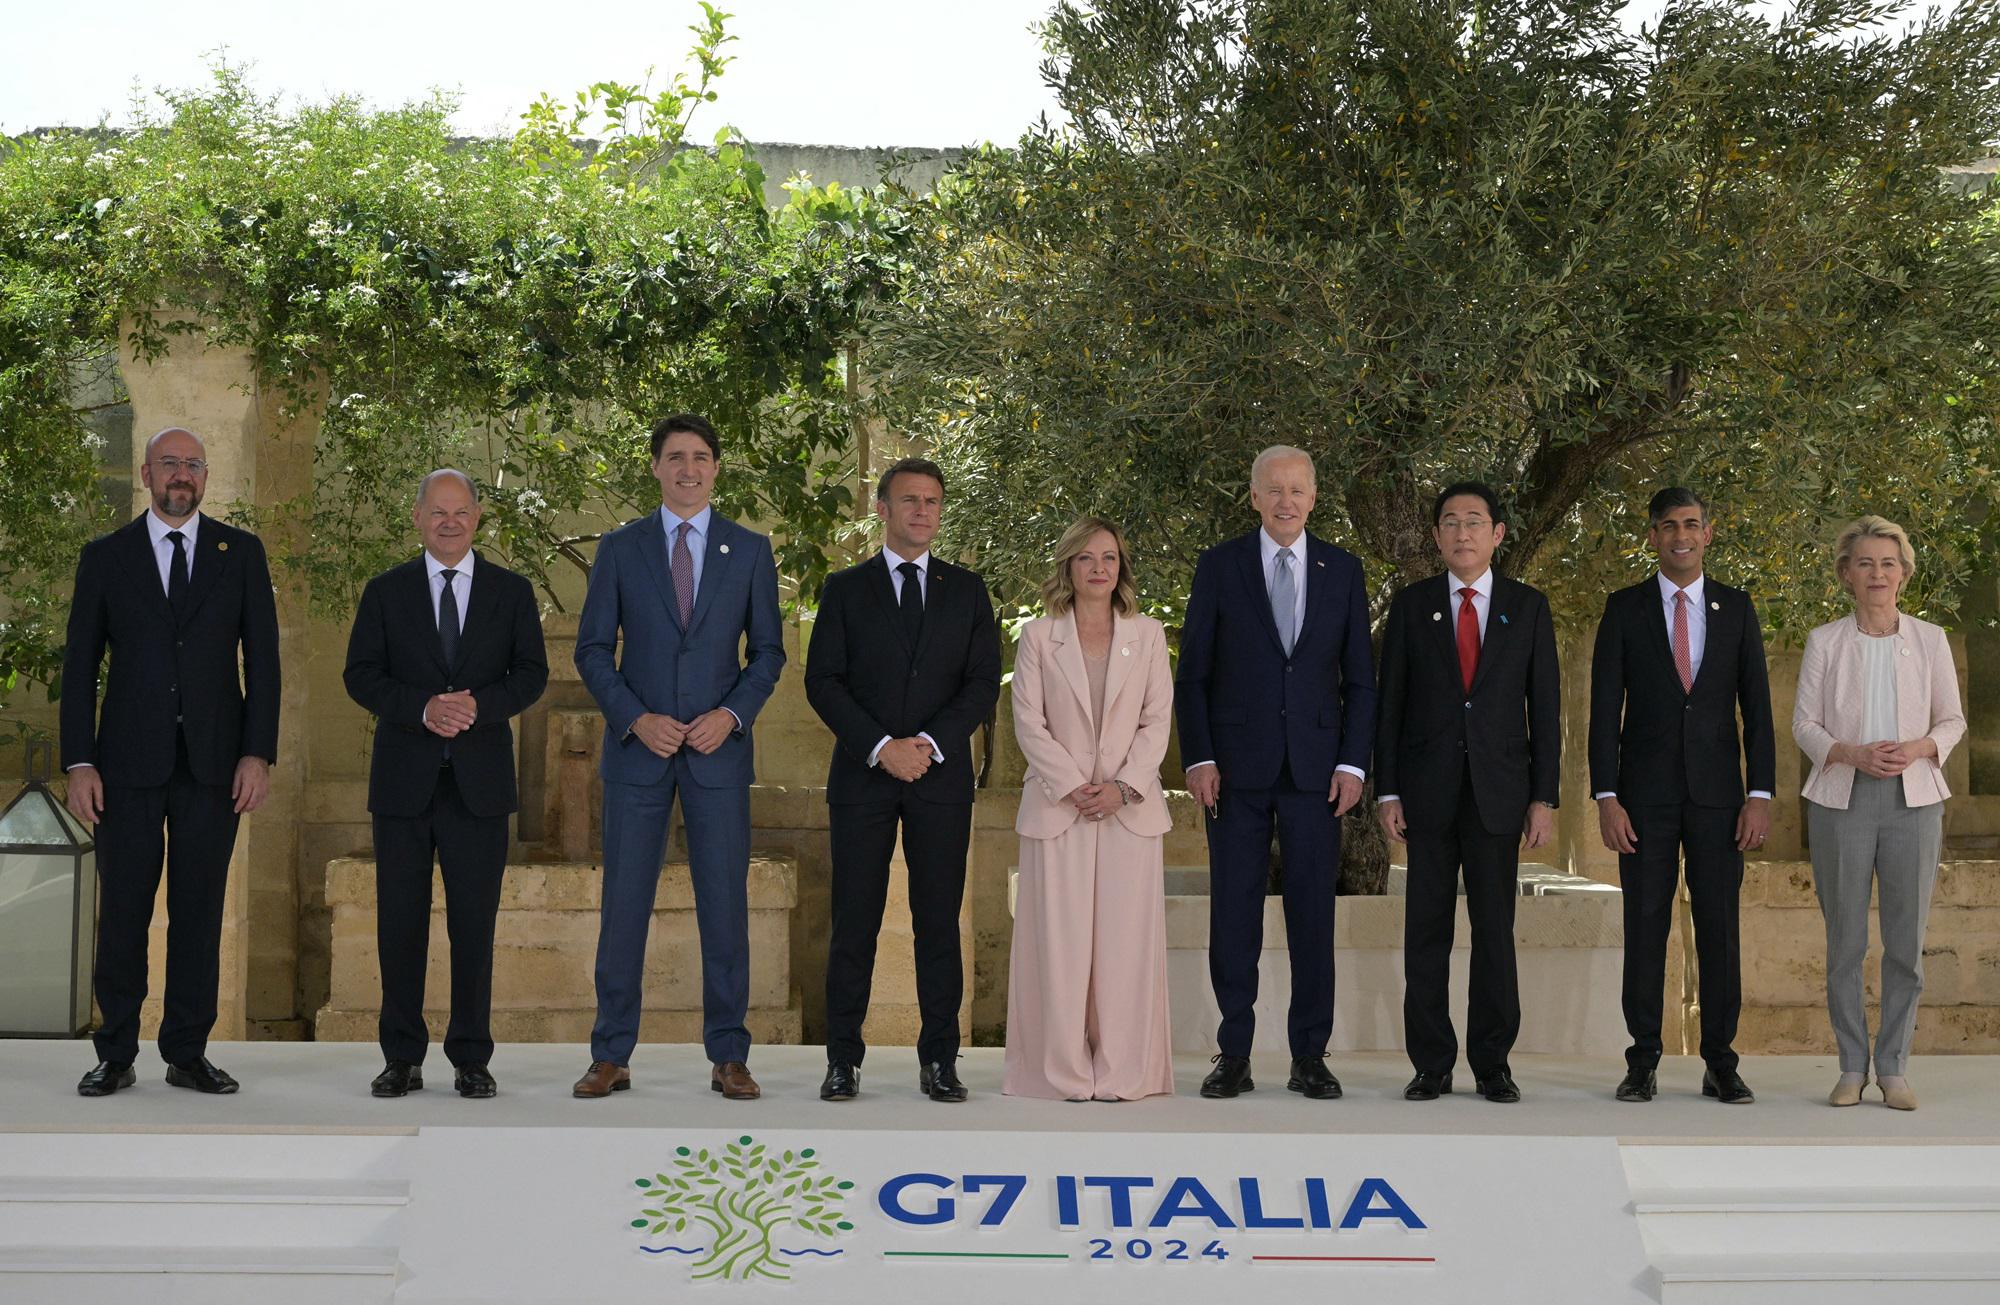 G7 al via - Meloni ai leader: Molto lavoro da fare - certa di risultati concreti